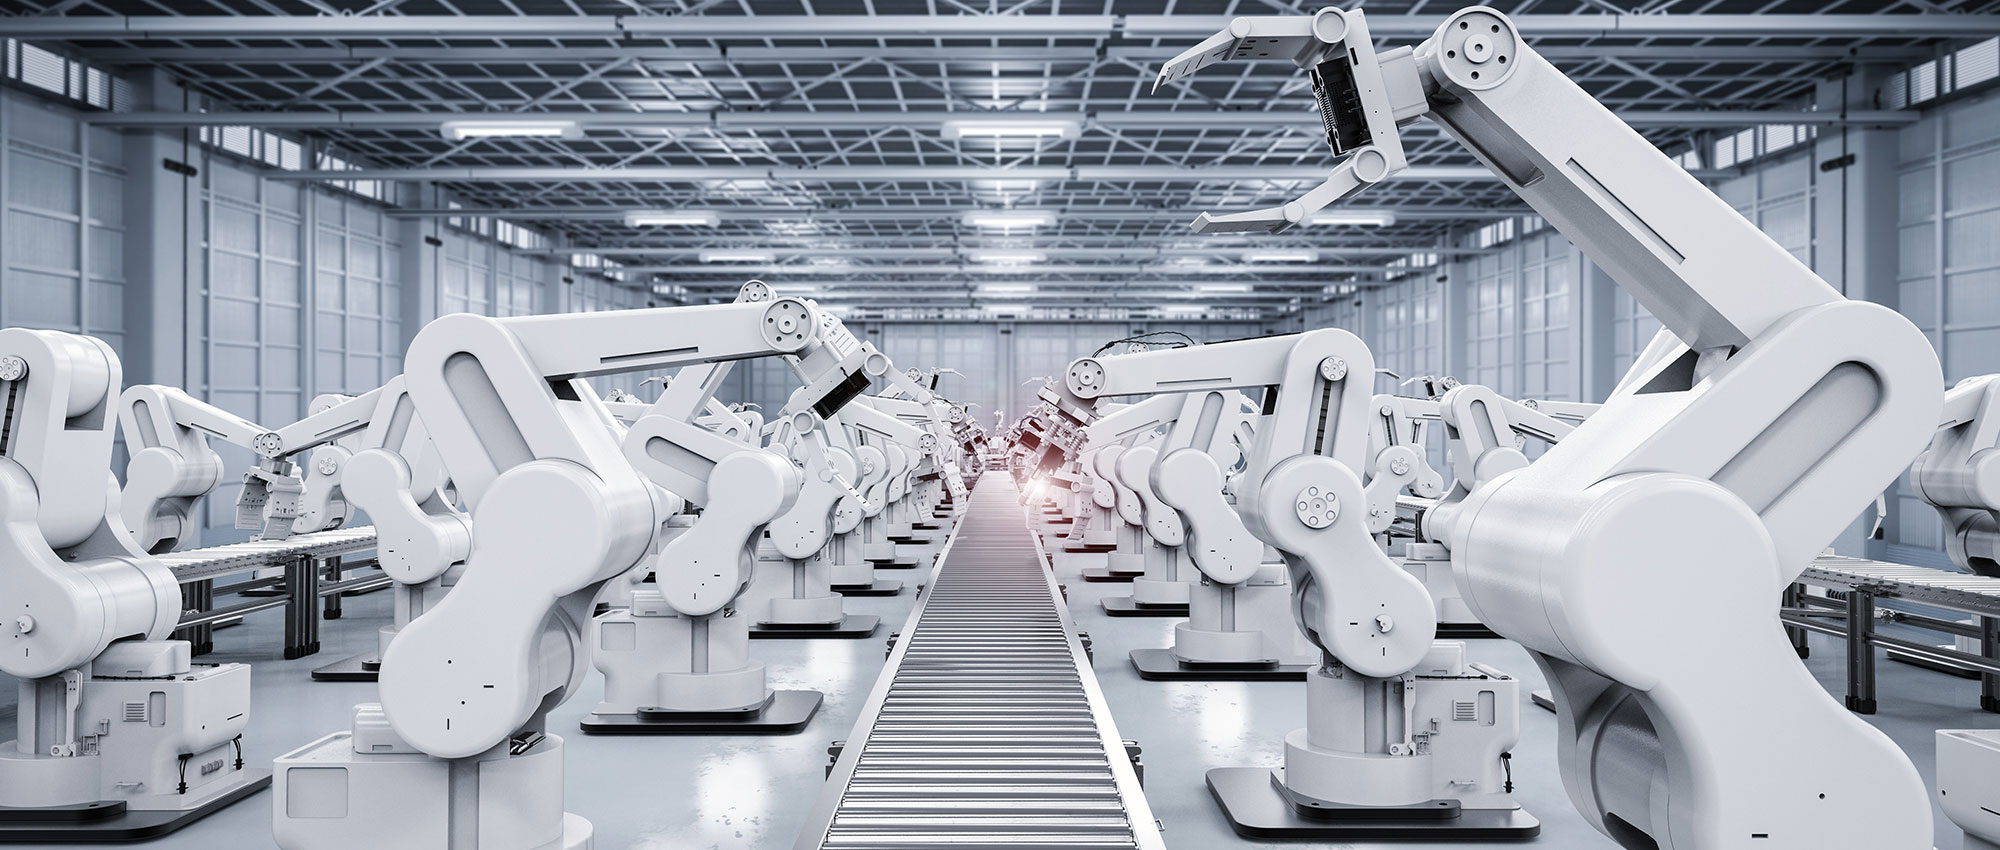 Viele weiße Roboter entlang einer Produktionslinie